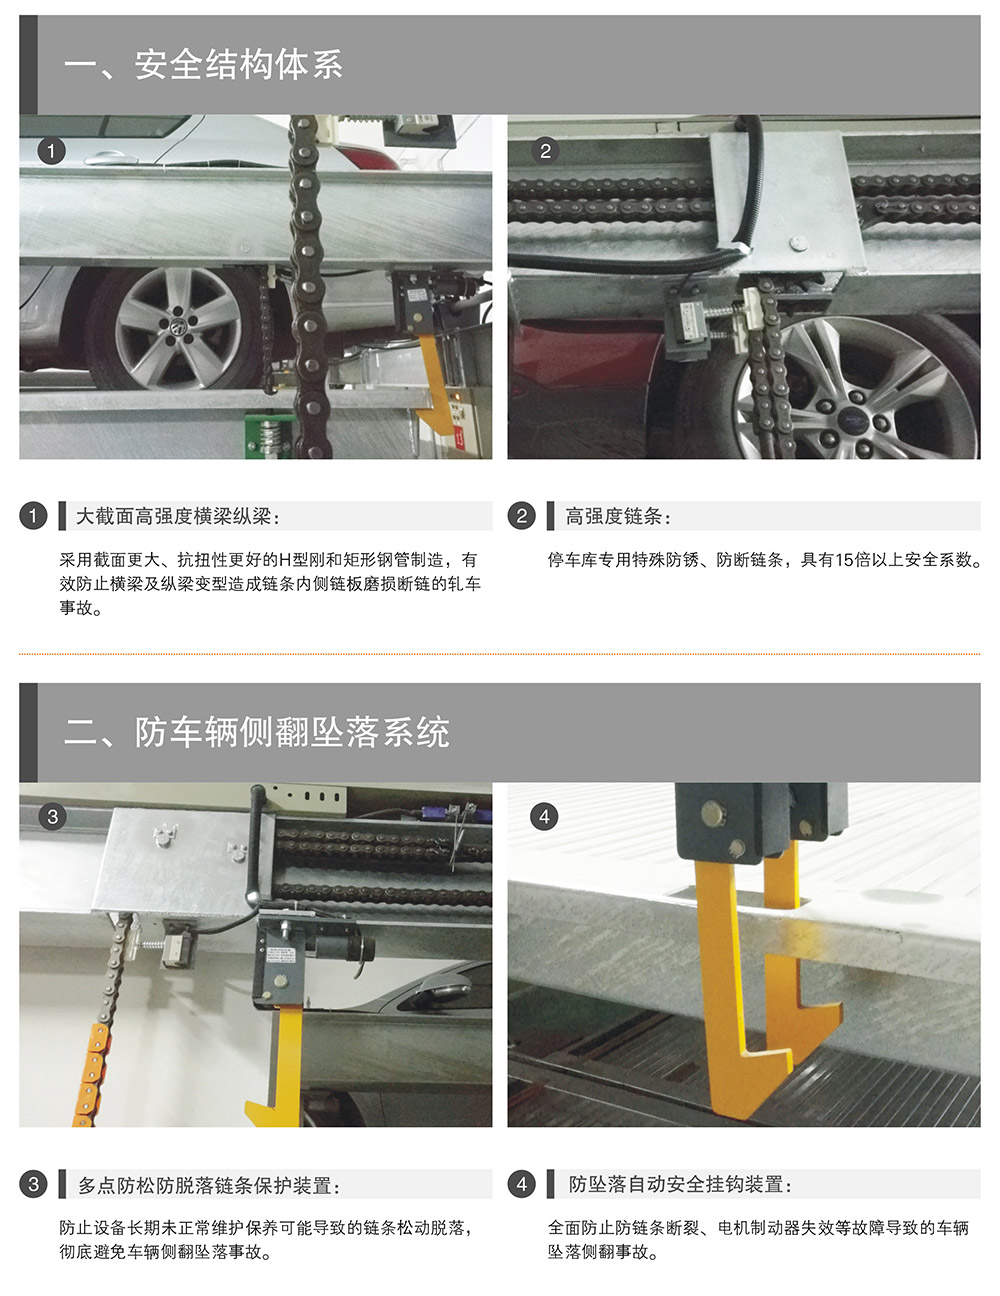 重庆PSH升降横移停车设备安全结构体系.jpg